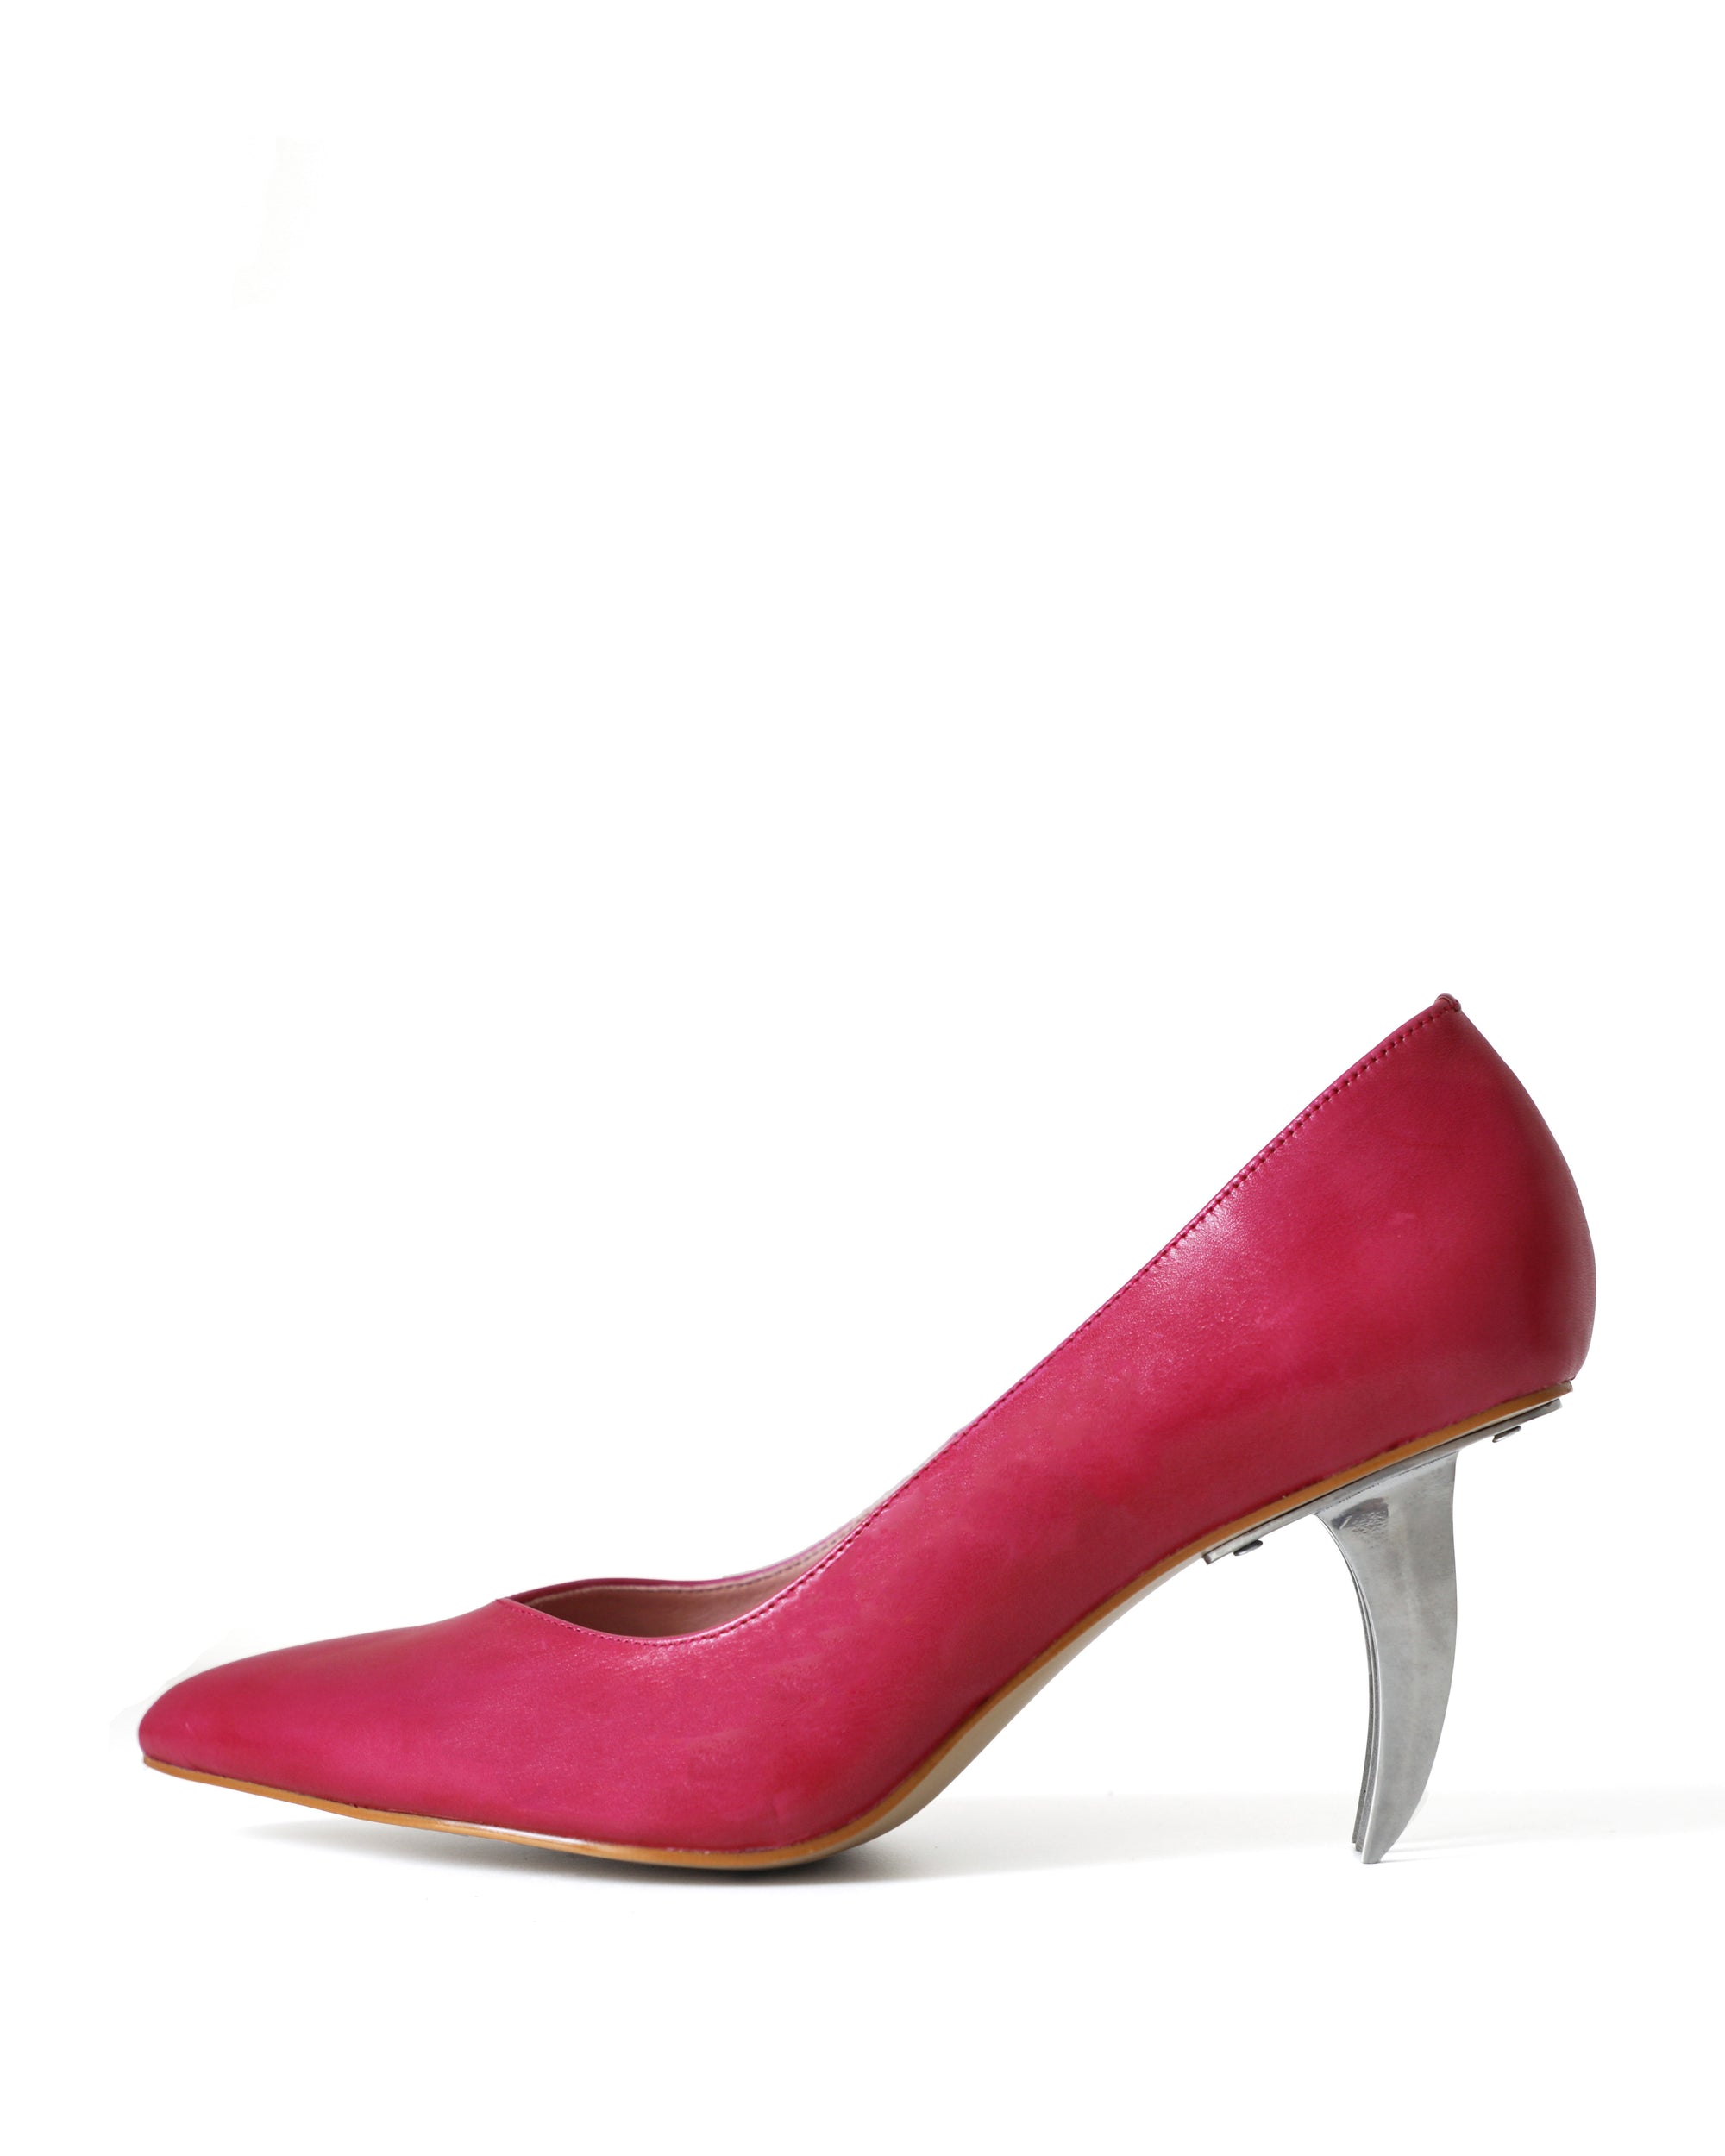 Red Violet Blade Heels - RIVERPEACE.CO Women's High Heels - Front